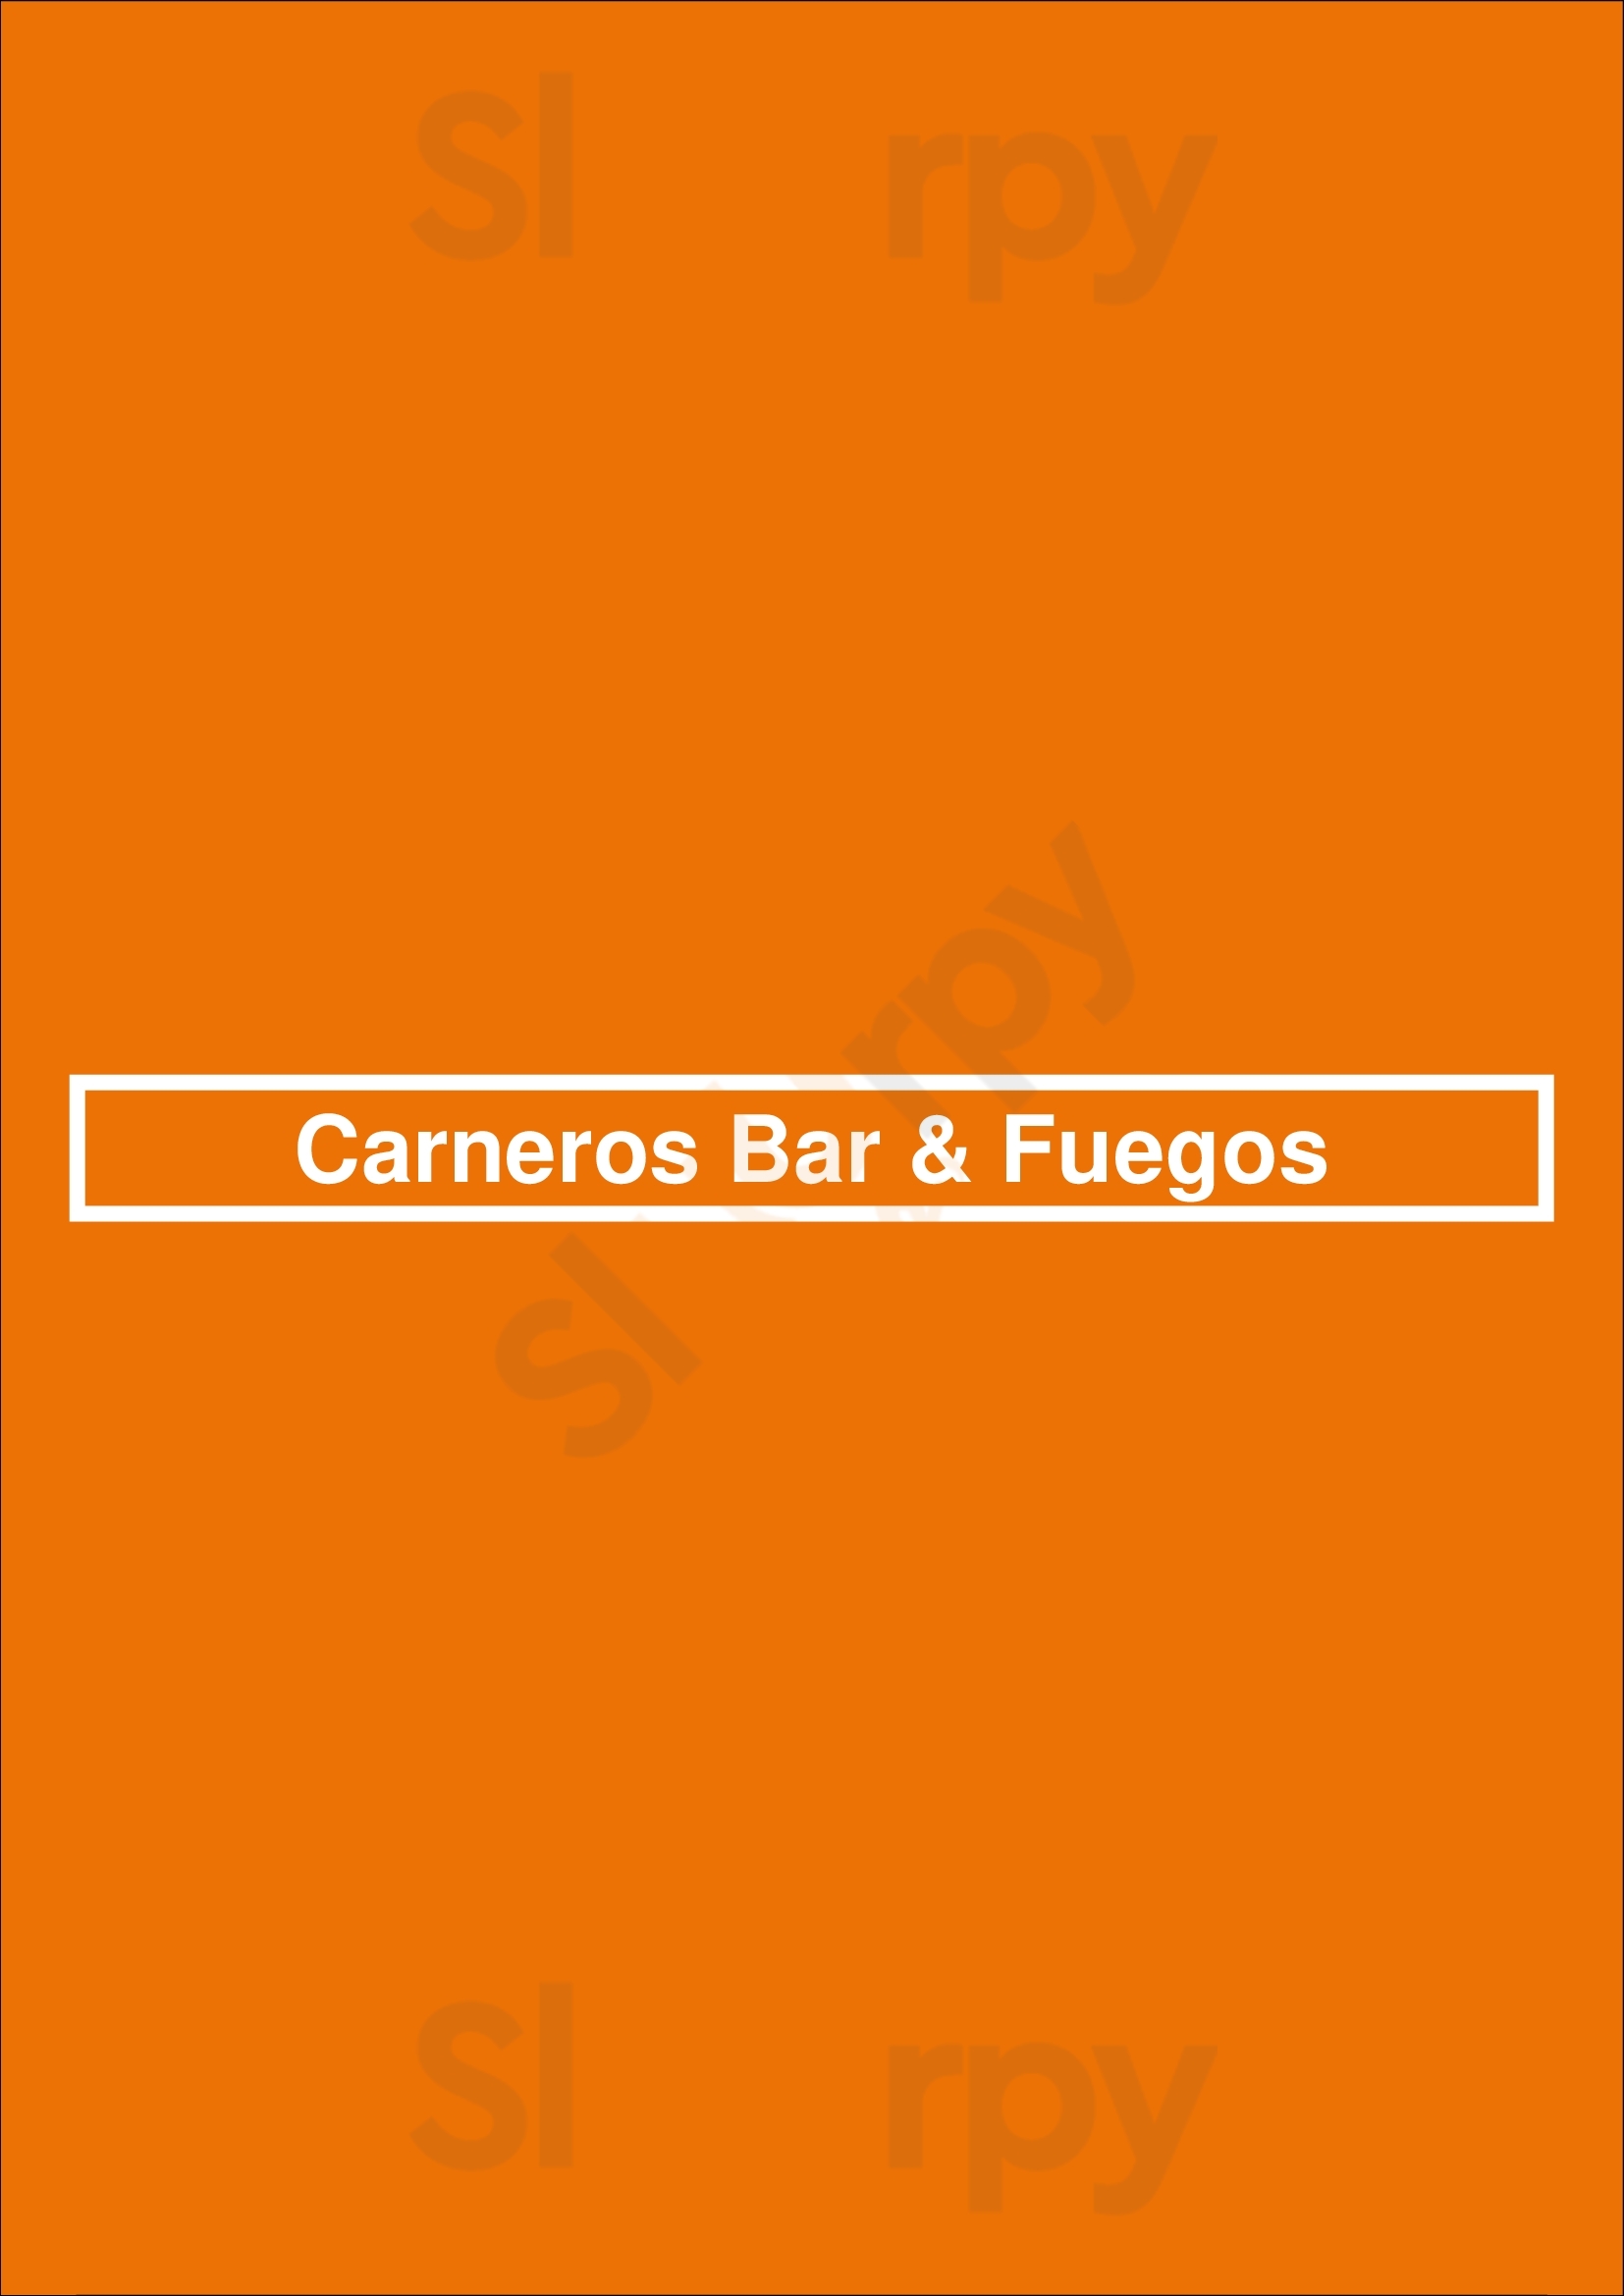 Carneros Bar & Fuegos Buenos Aires Menu - 1